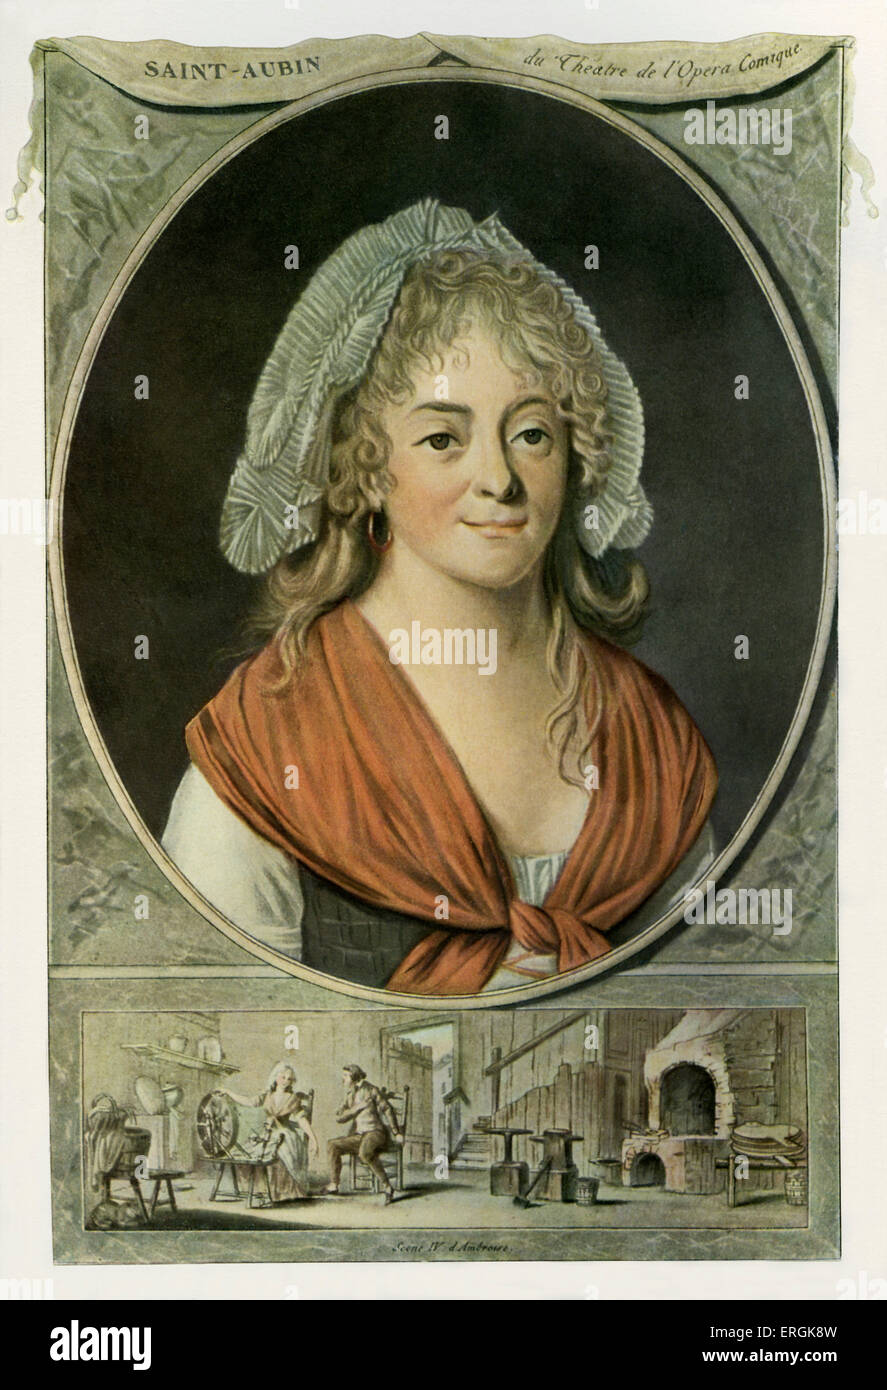 Madame Saint-Aubin (1746-1830), nach dem Stich von Pierre Michel Alix, nach Jean Francois Garnerey (1755-1837). Stéphanie Stockfoto